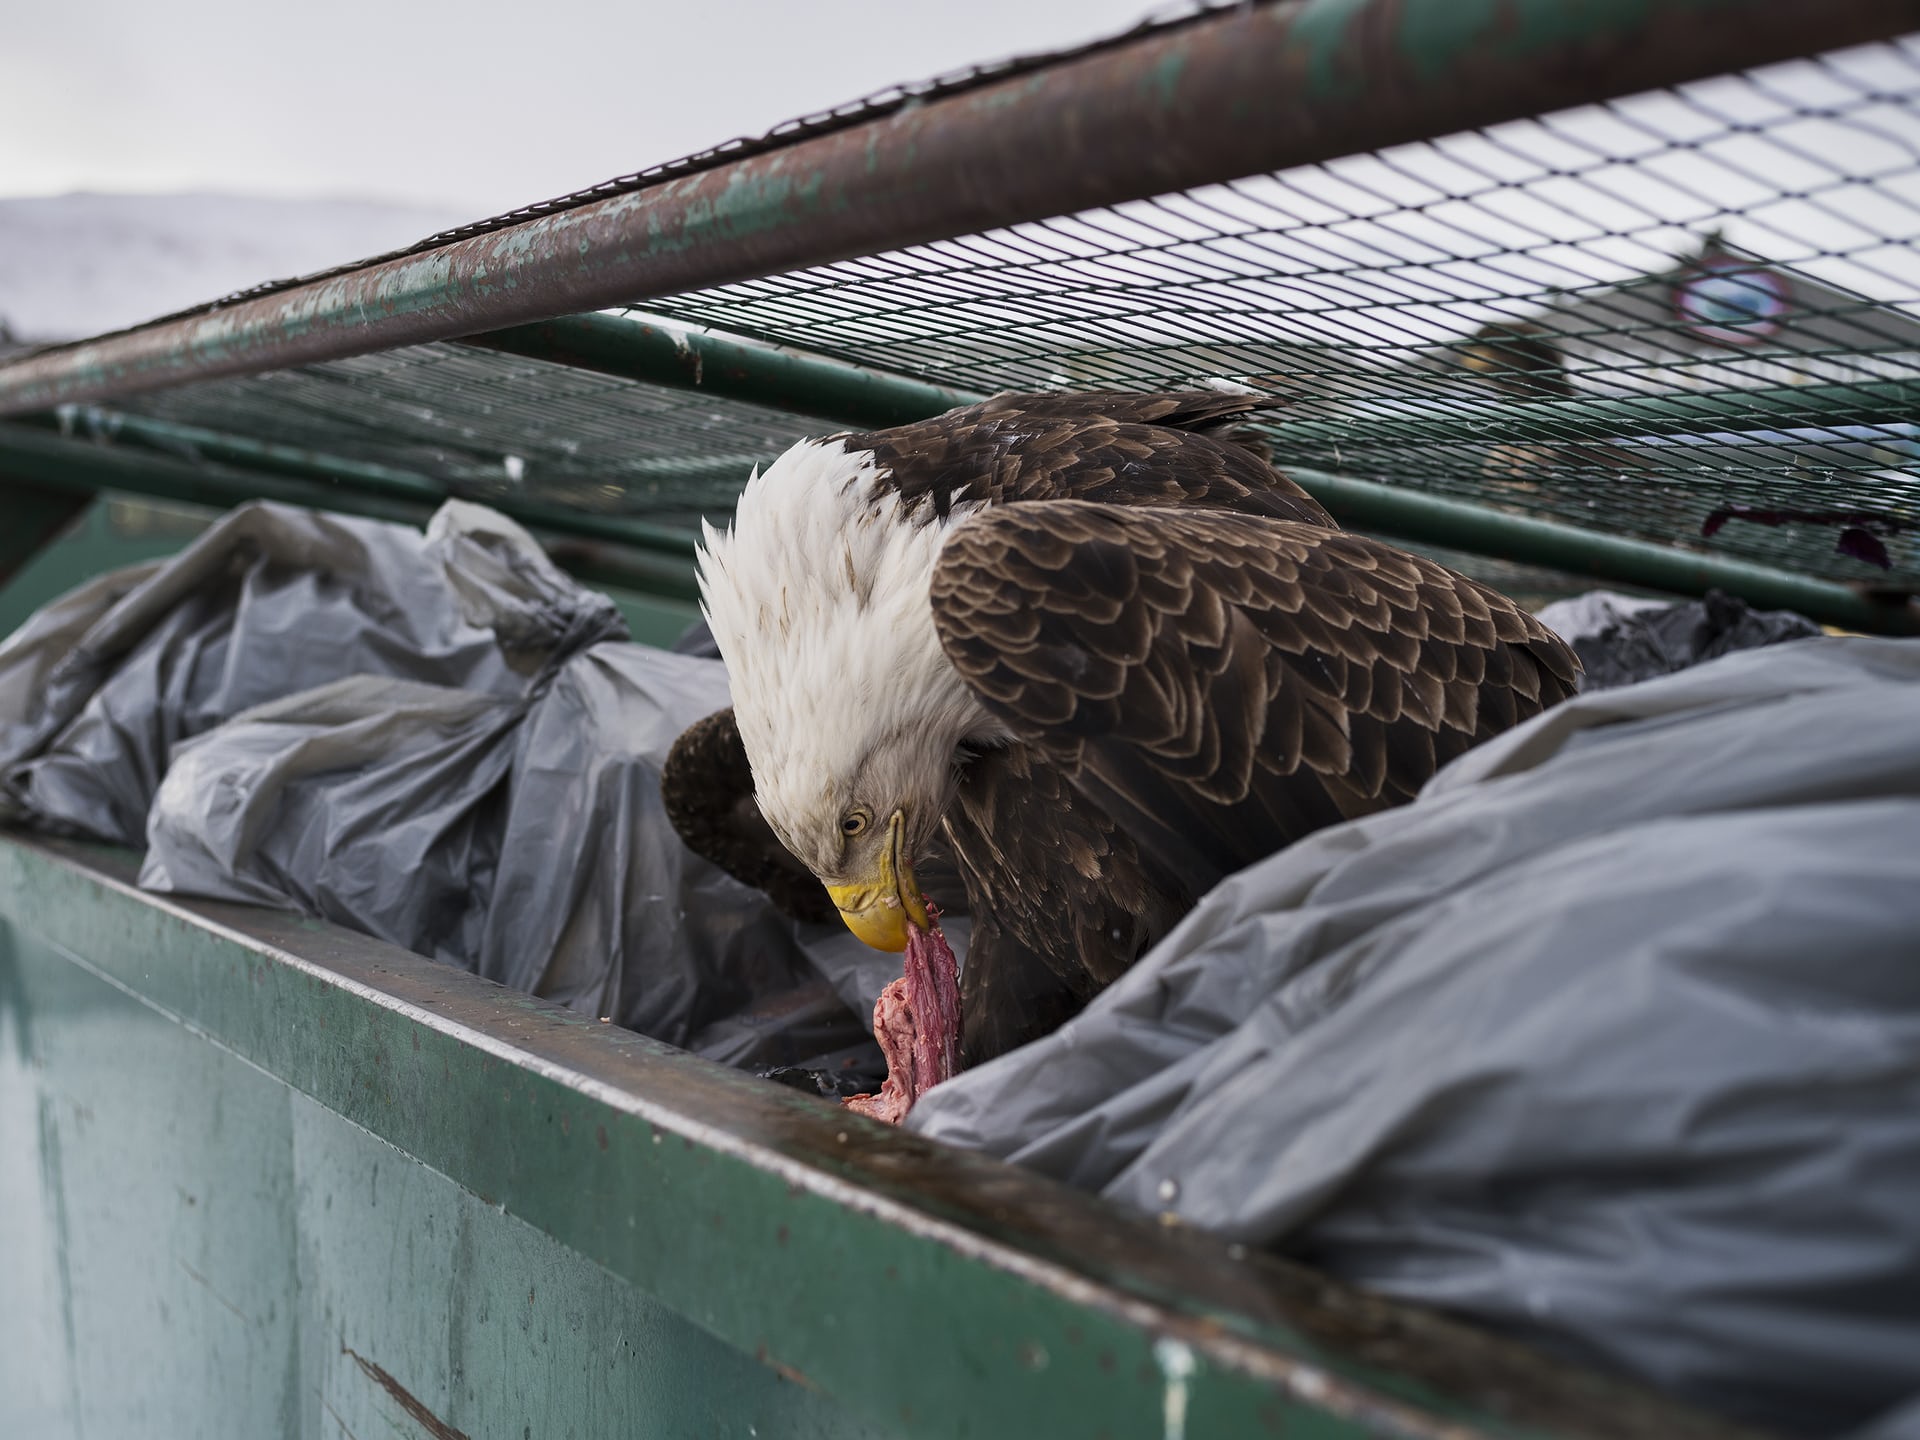 Giải nhất hạng mục Thiên nhiên. Một con đại bàng đầu trắng đang ăn một miếng thịt sống trong thùng rác phía sau một siêu thị, ảnh chụp ở Dutch Harbor, Alaska, Hoa Kỳ. Ảnh: Corey Arnold/AP.